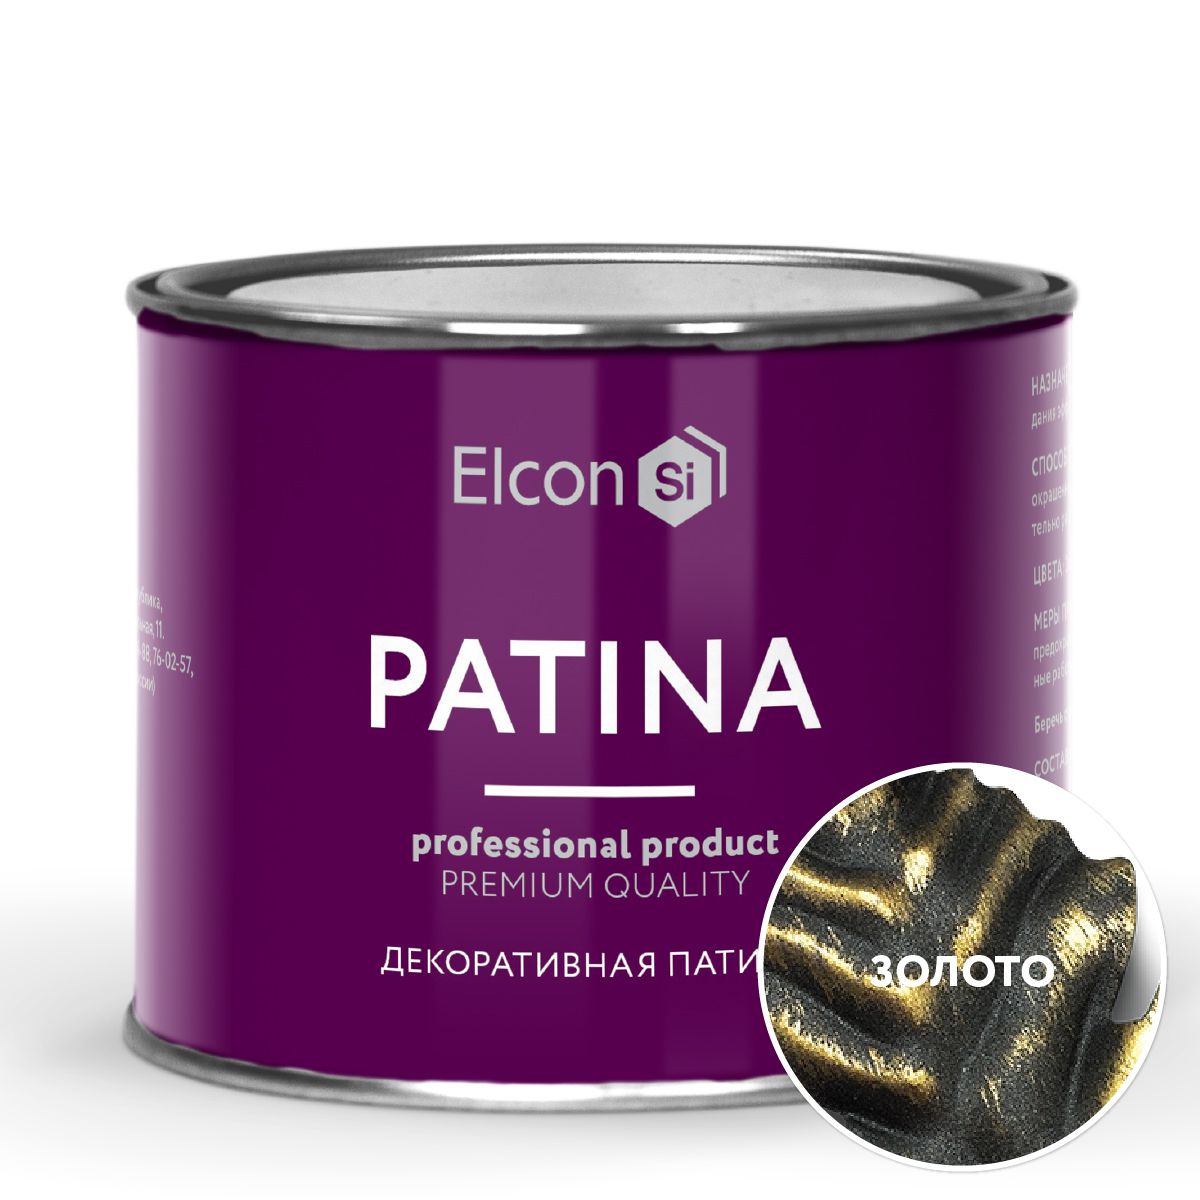 Декоративная патина Elcon Patina Золото 0,2 кг декоративная патина elcon patina бронза 0 2 кг